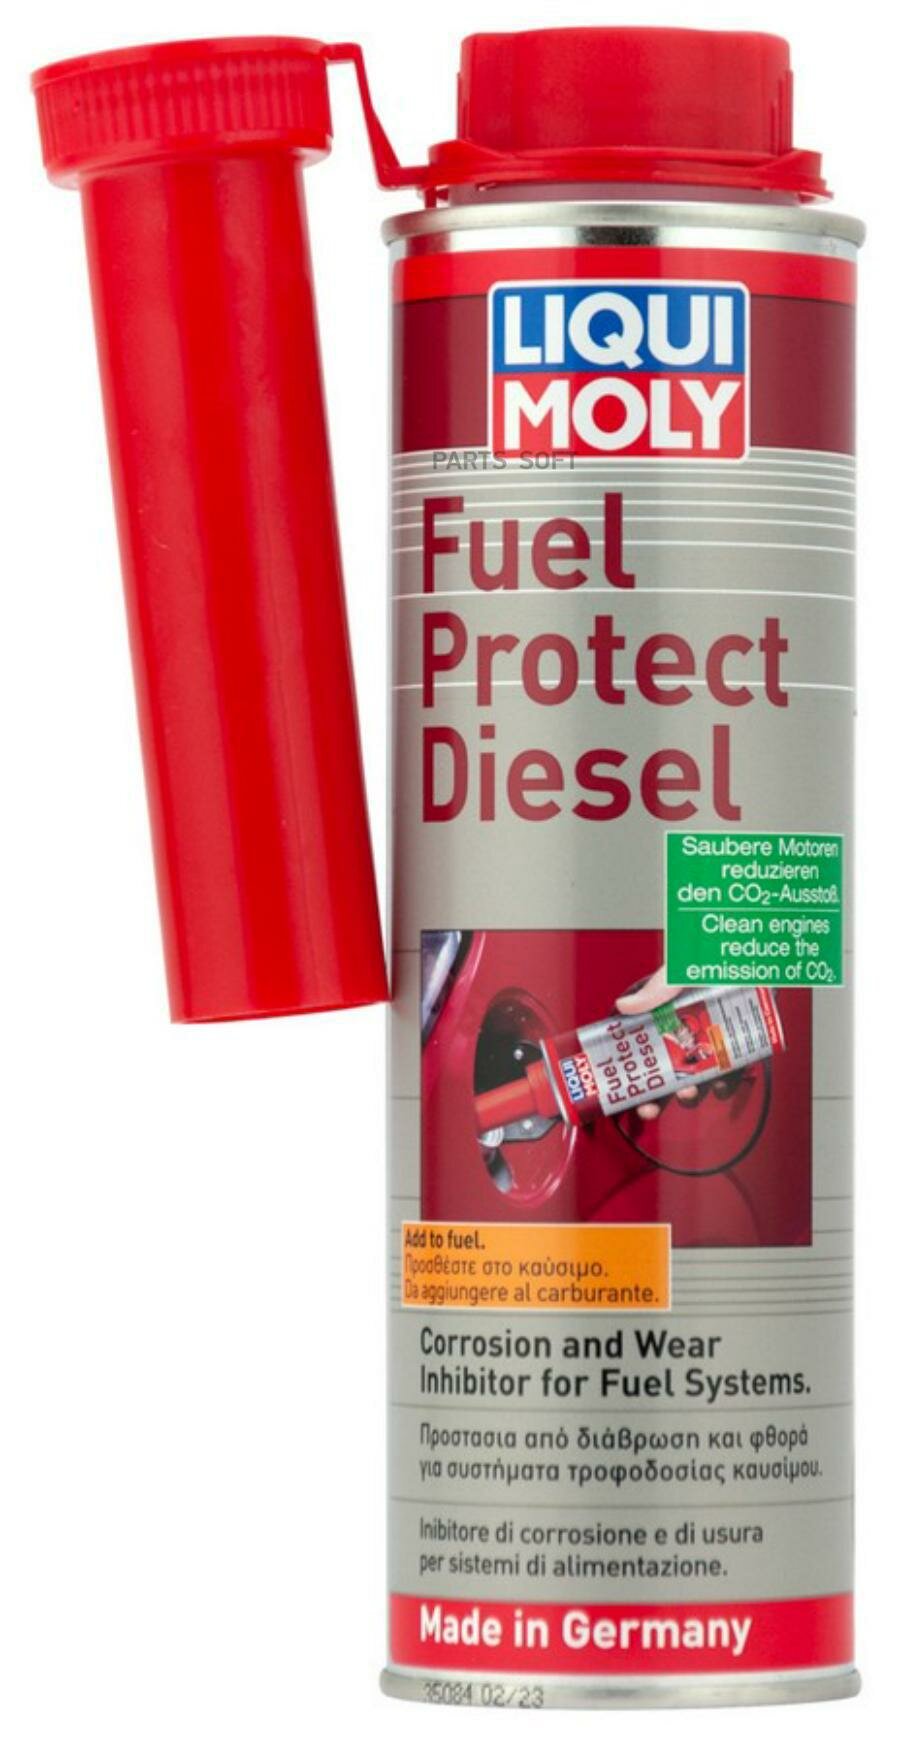 Осушитель Топлива Дизель Fuel Protect Diesel (03л) Liqui moly арт. 21649